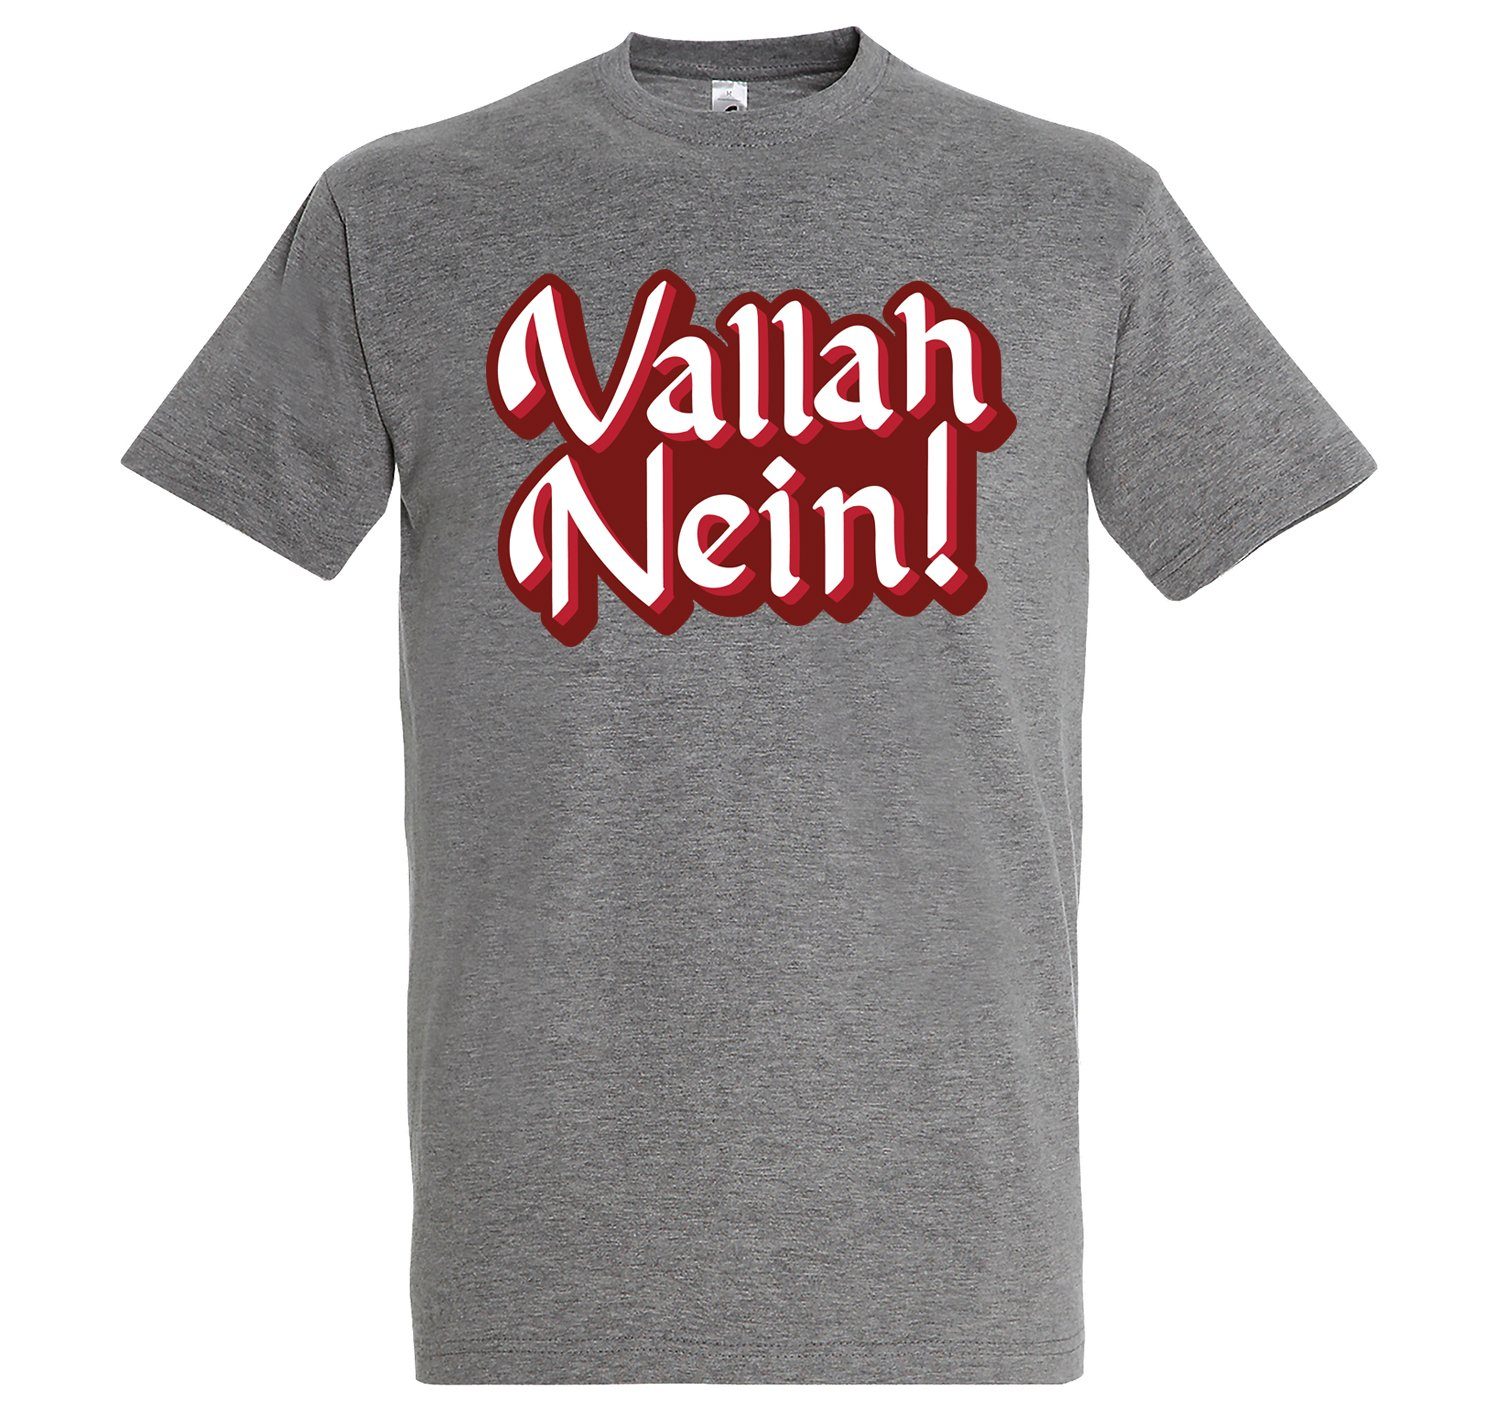 Youth Designz T-Shirt "Vallah Nein" Herren T-Shirt mit lustigem Spruch Grau